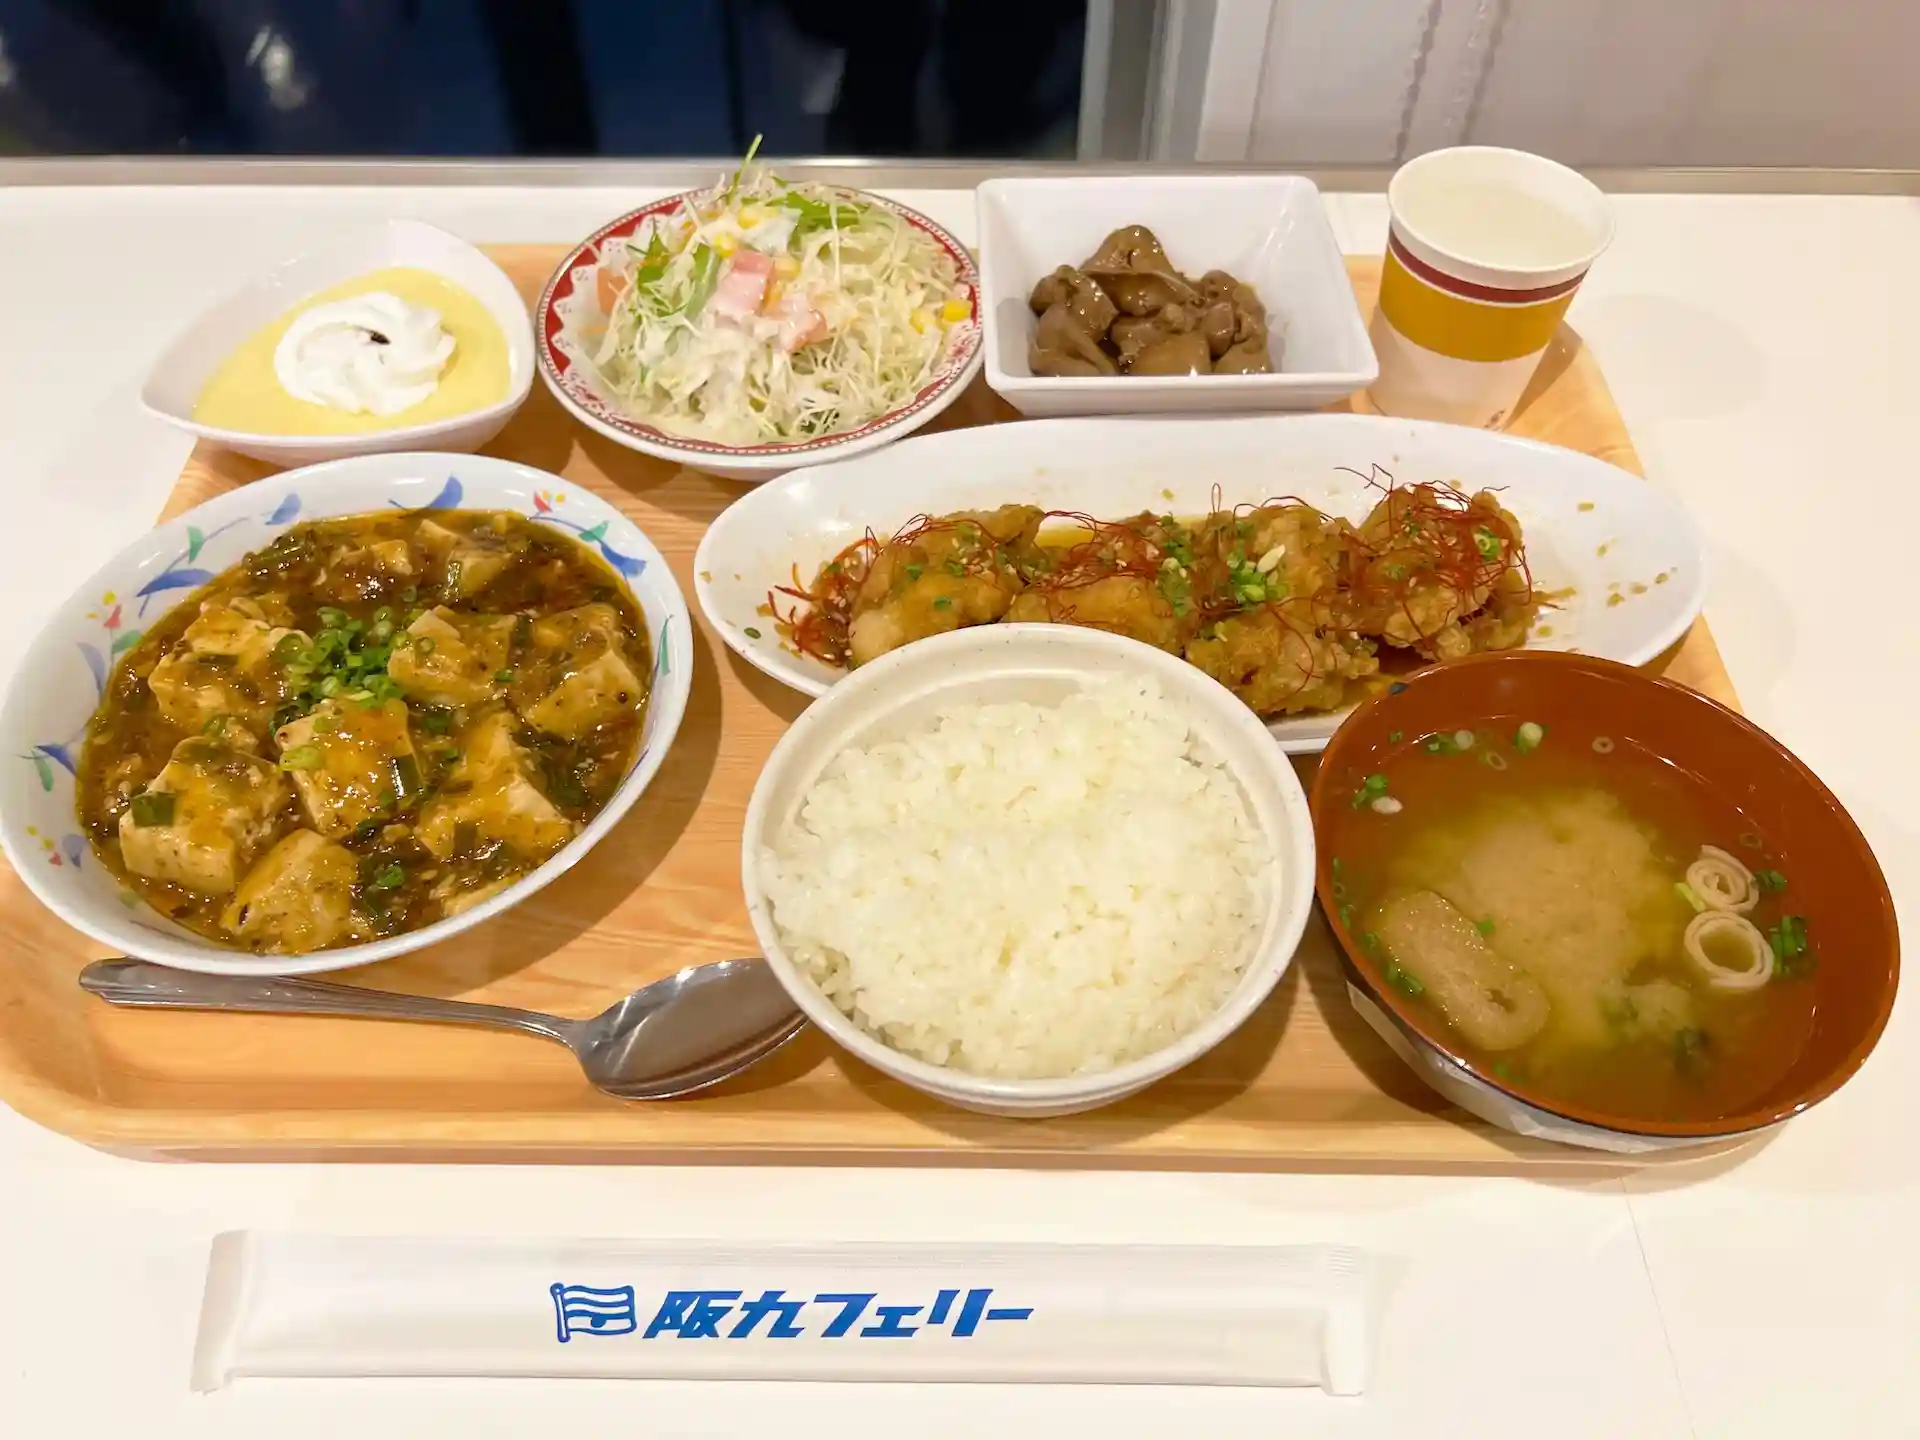 阪九渡輪摂津號船上餐廳的晚餐菜單